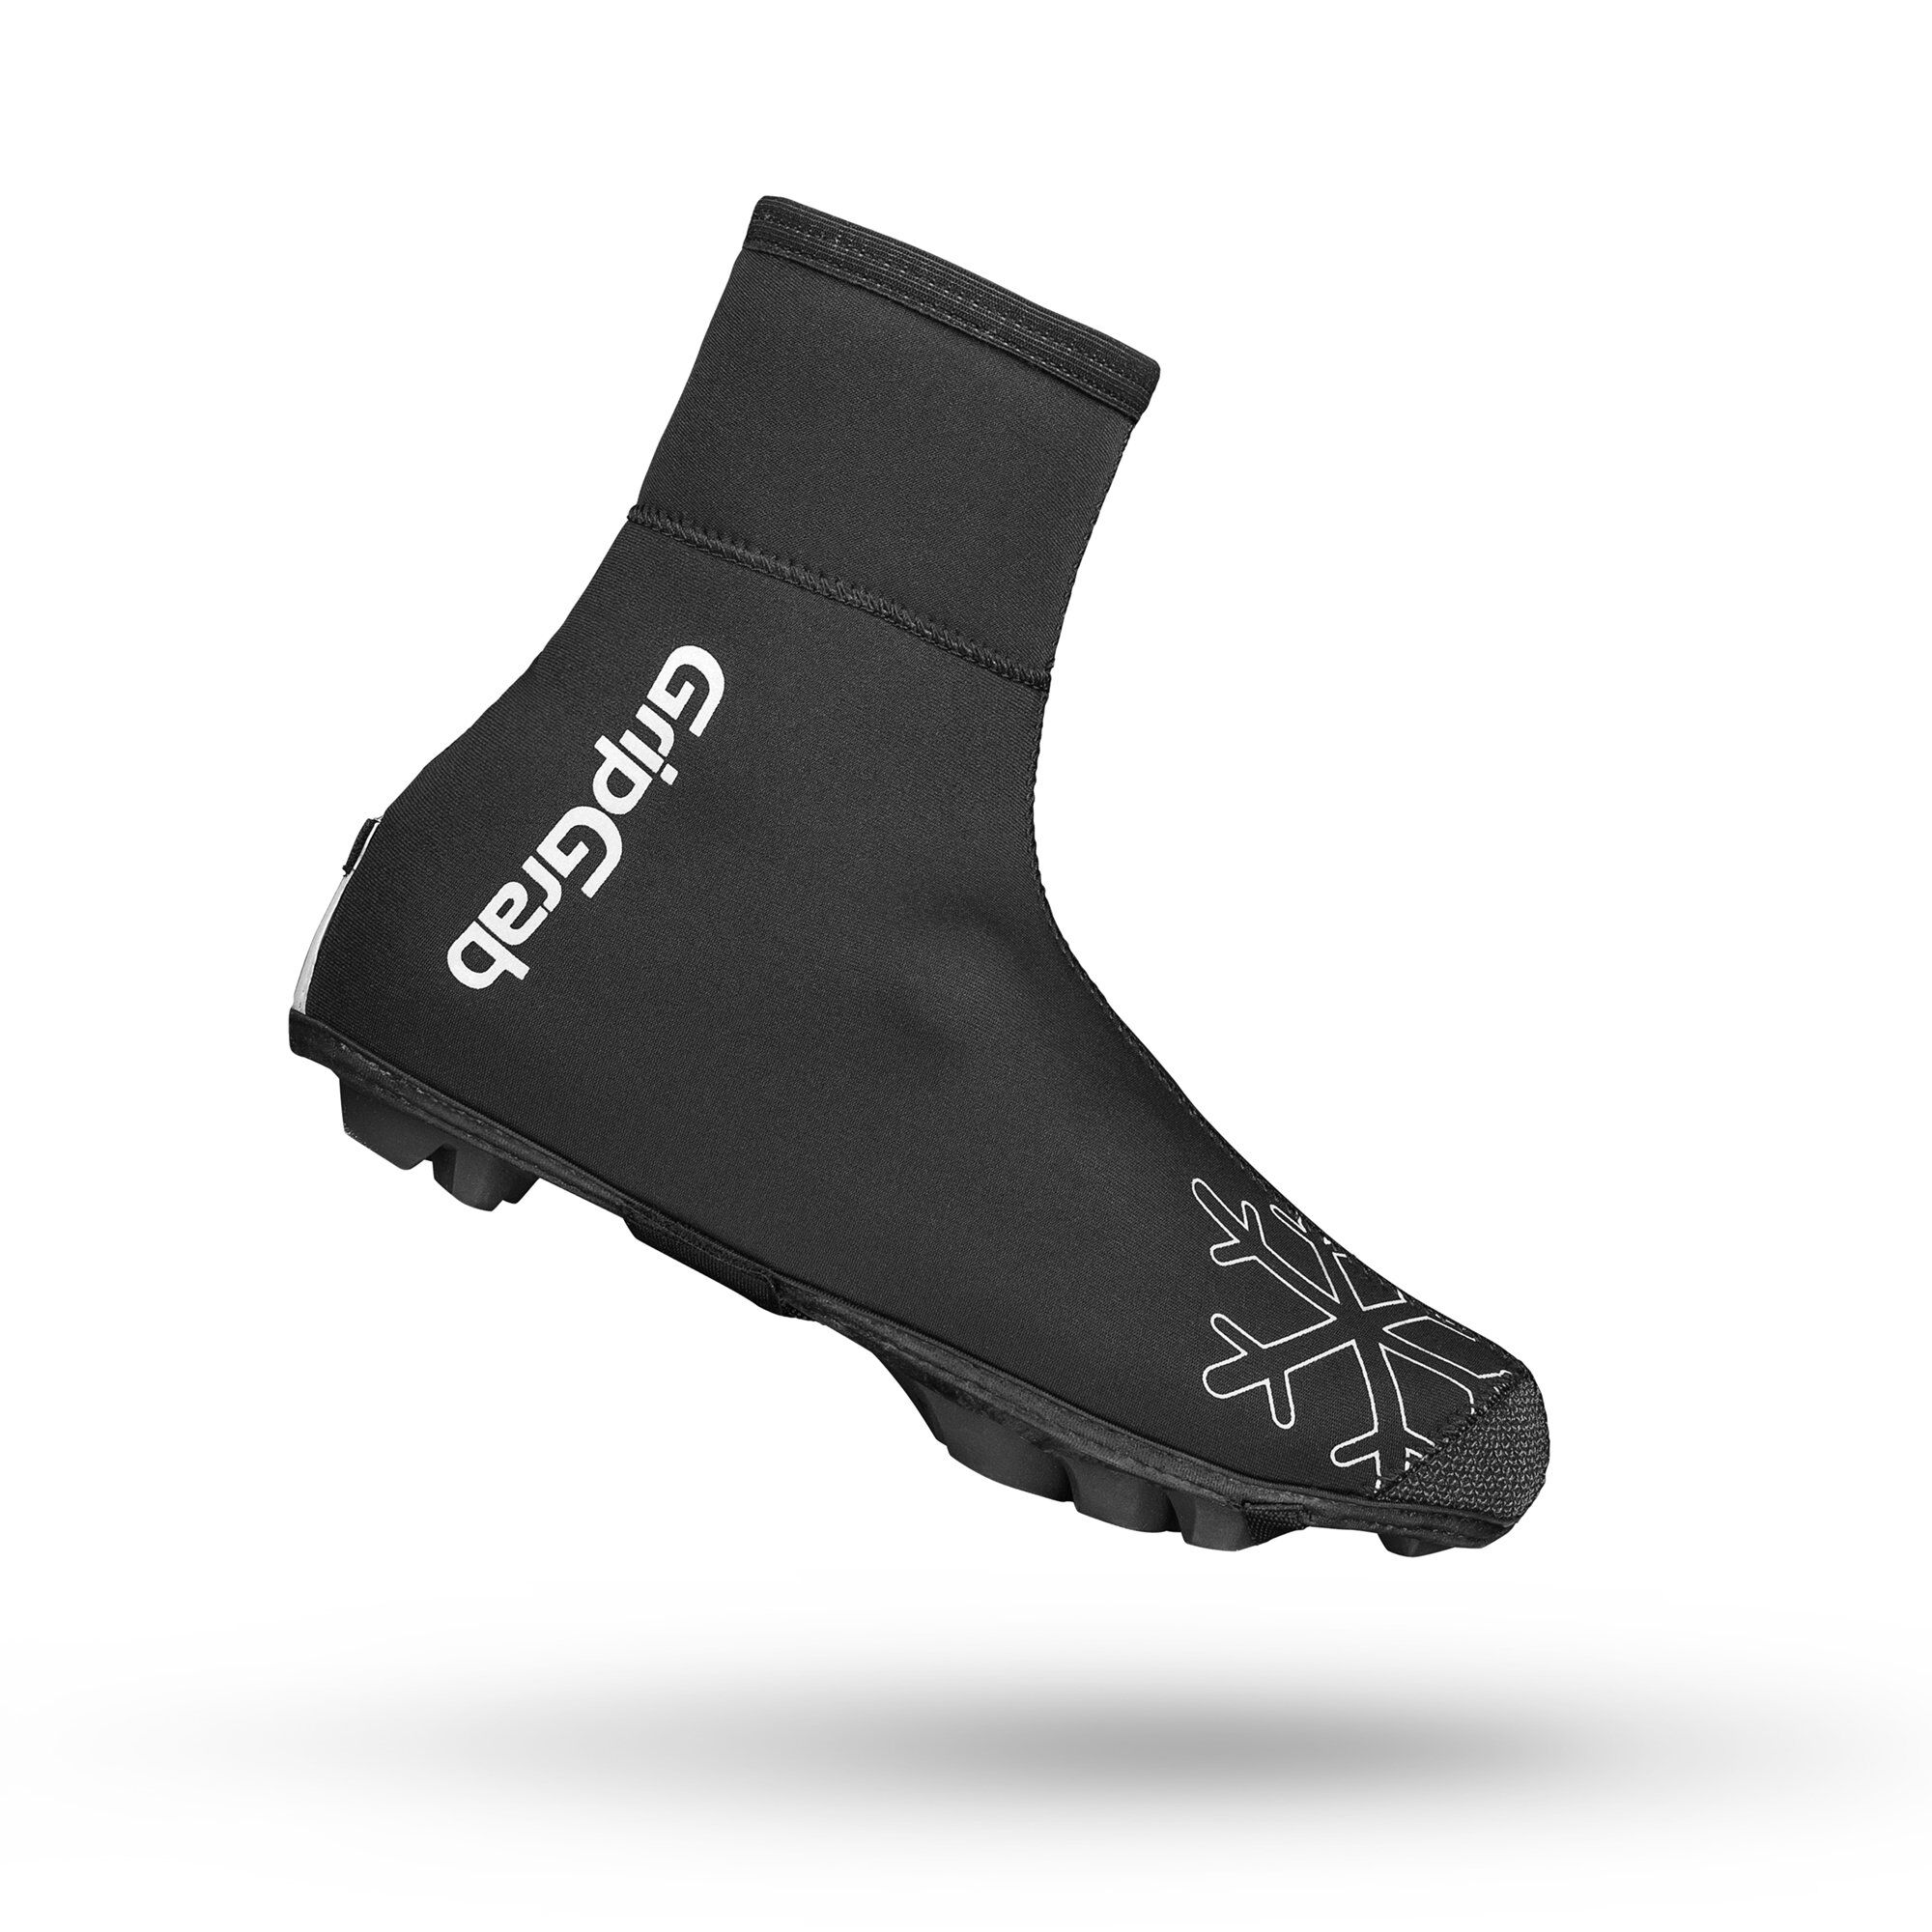 Grip Grab Arctic X Waterproof Deep Winter MTB/CX Shoe Cover - Overschoenen